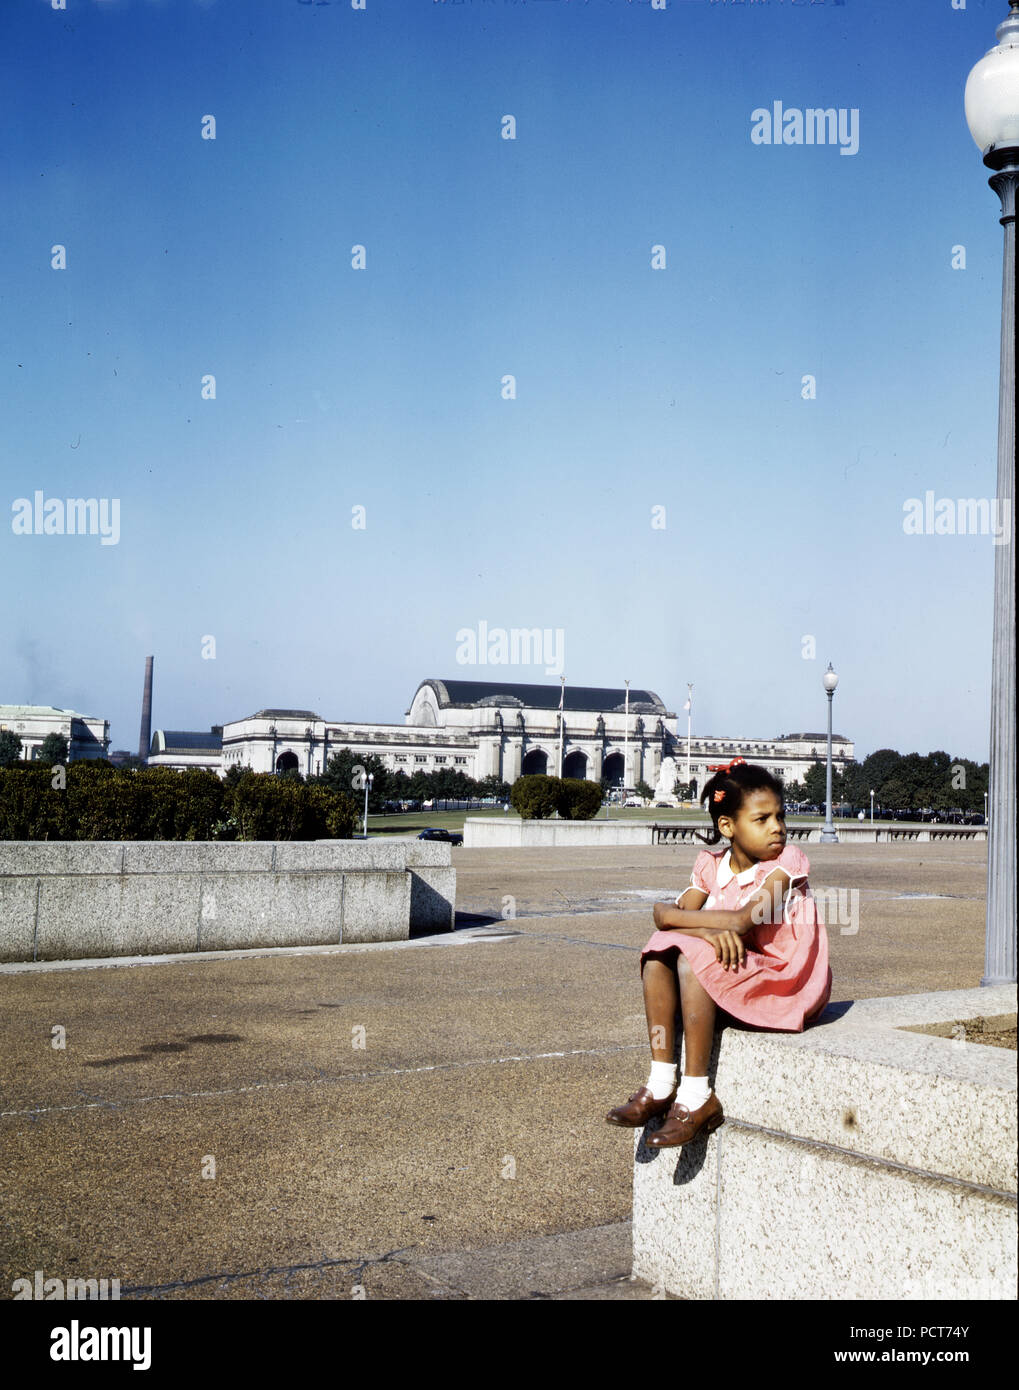 Kleines Mädchen in einem Park mit Union Station im Hintergrund, Washington, D.C. Ca. 1943 Stockfoto